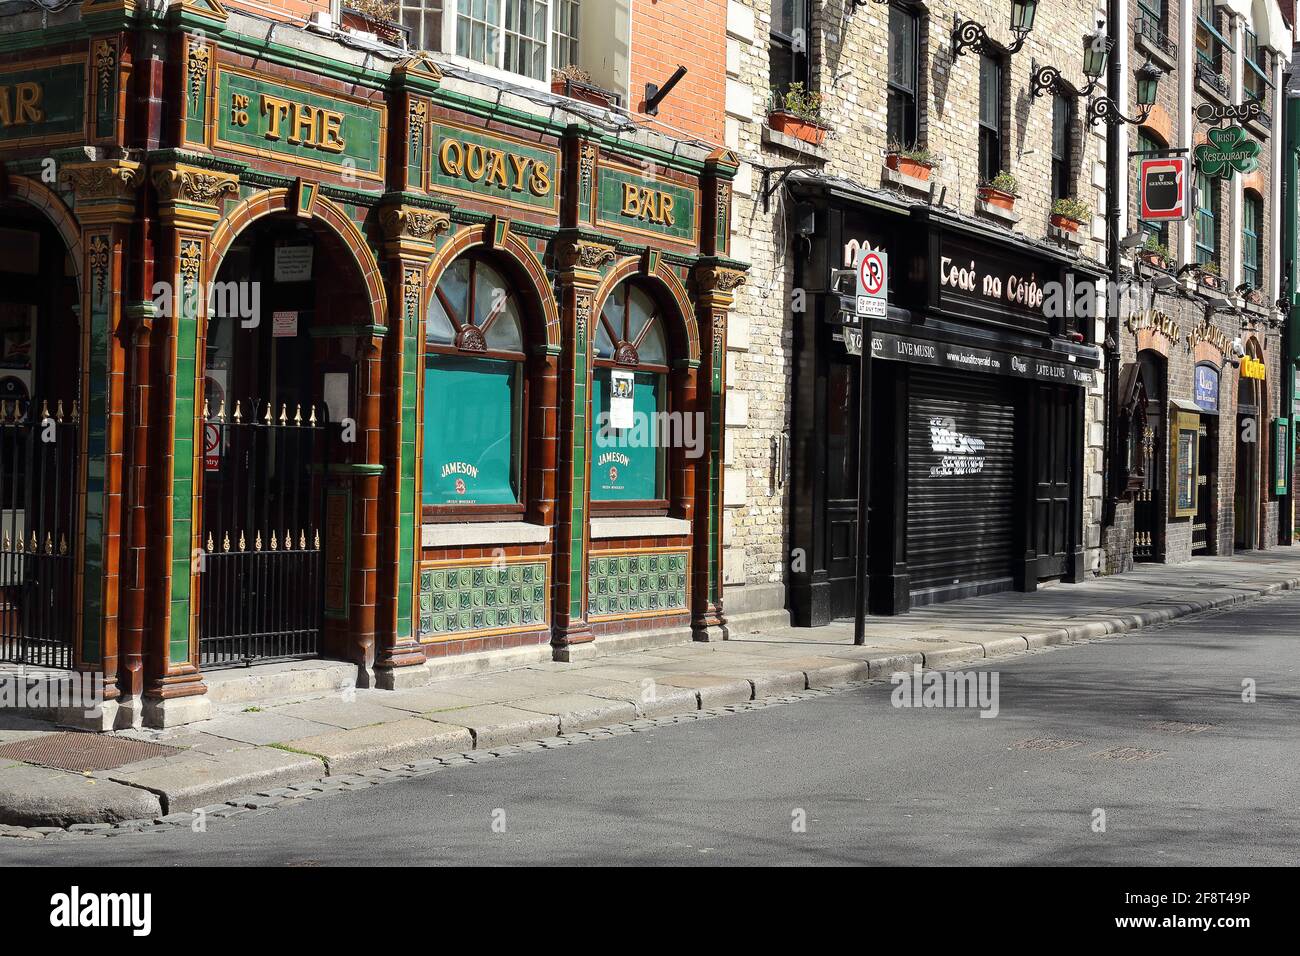 Le pub Quays dans le bar du temple de Dublin, Irlande Banque D'Images